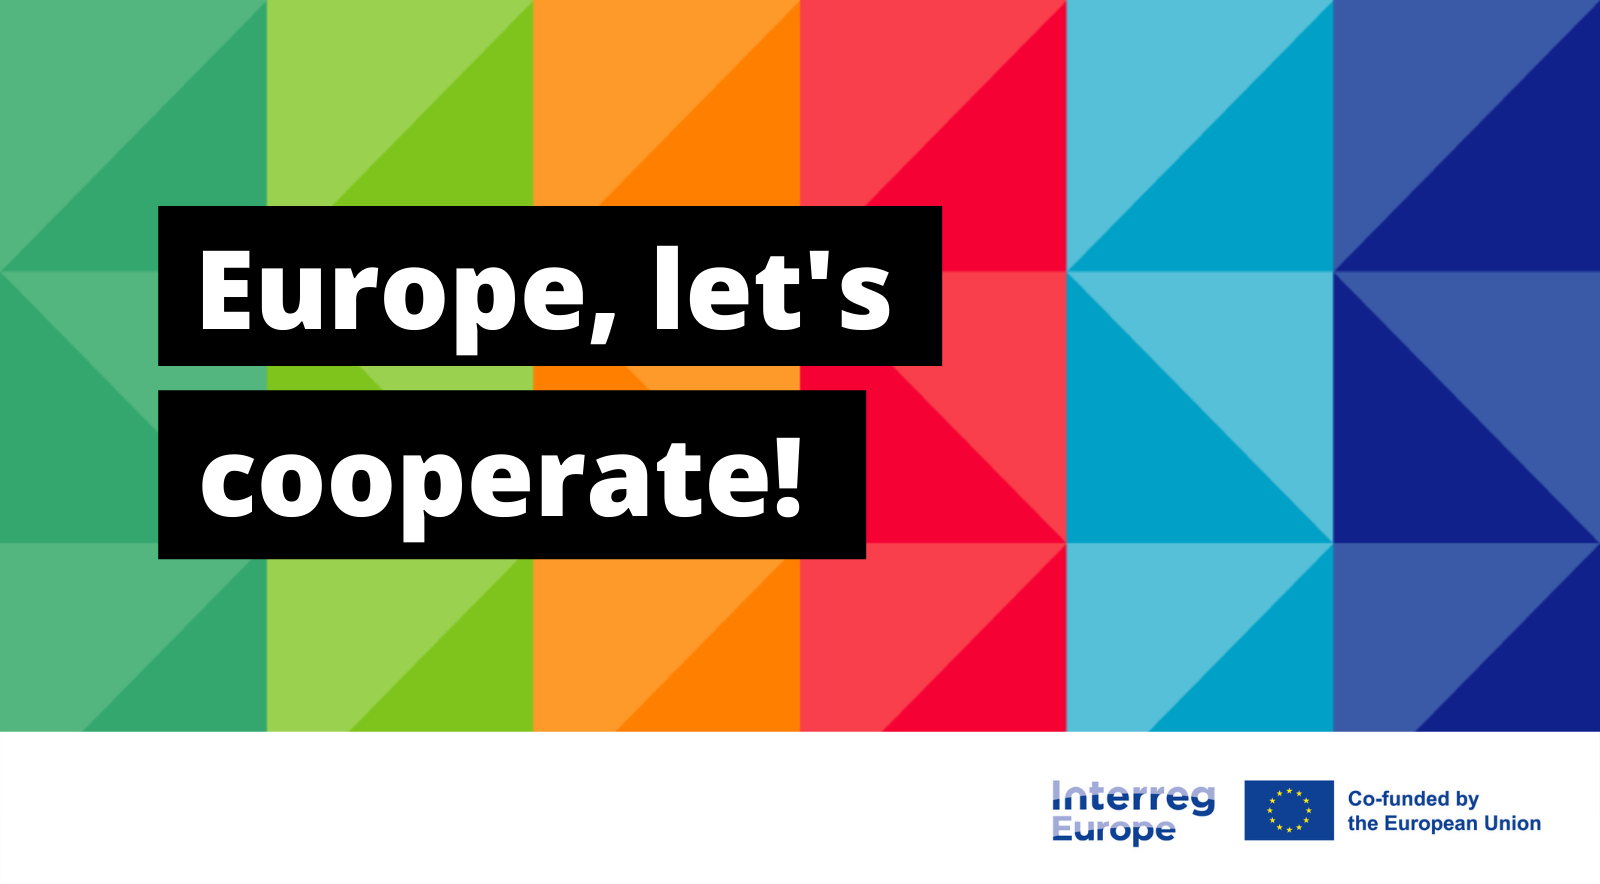 Otwarcie pierwszego naboru wniosków w programie Interreg Europa 2021-2027